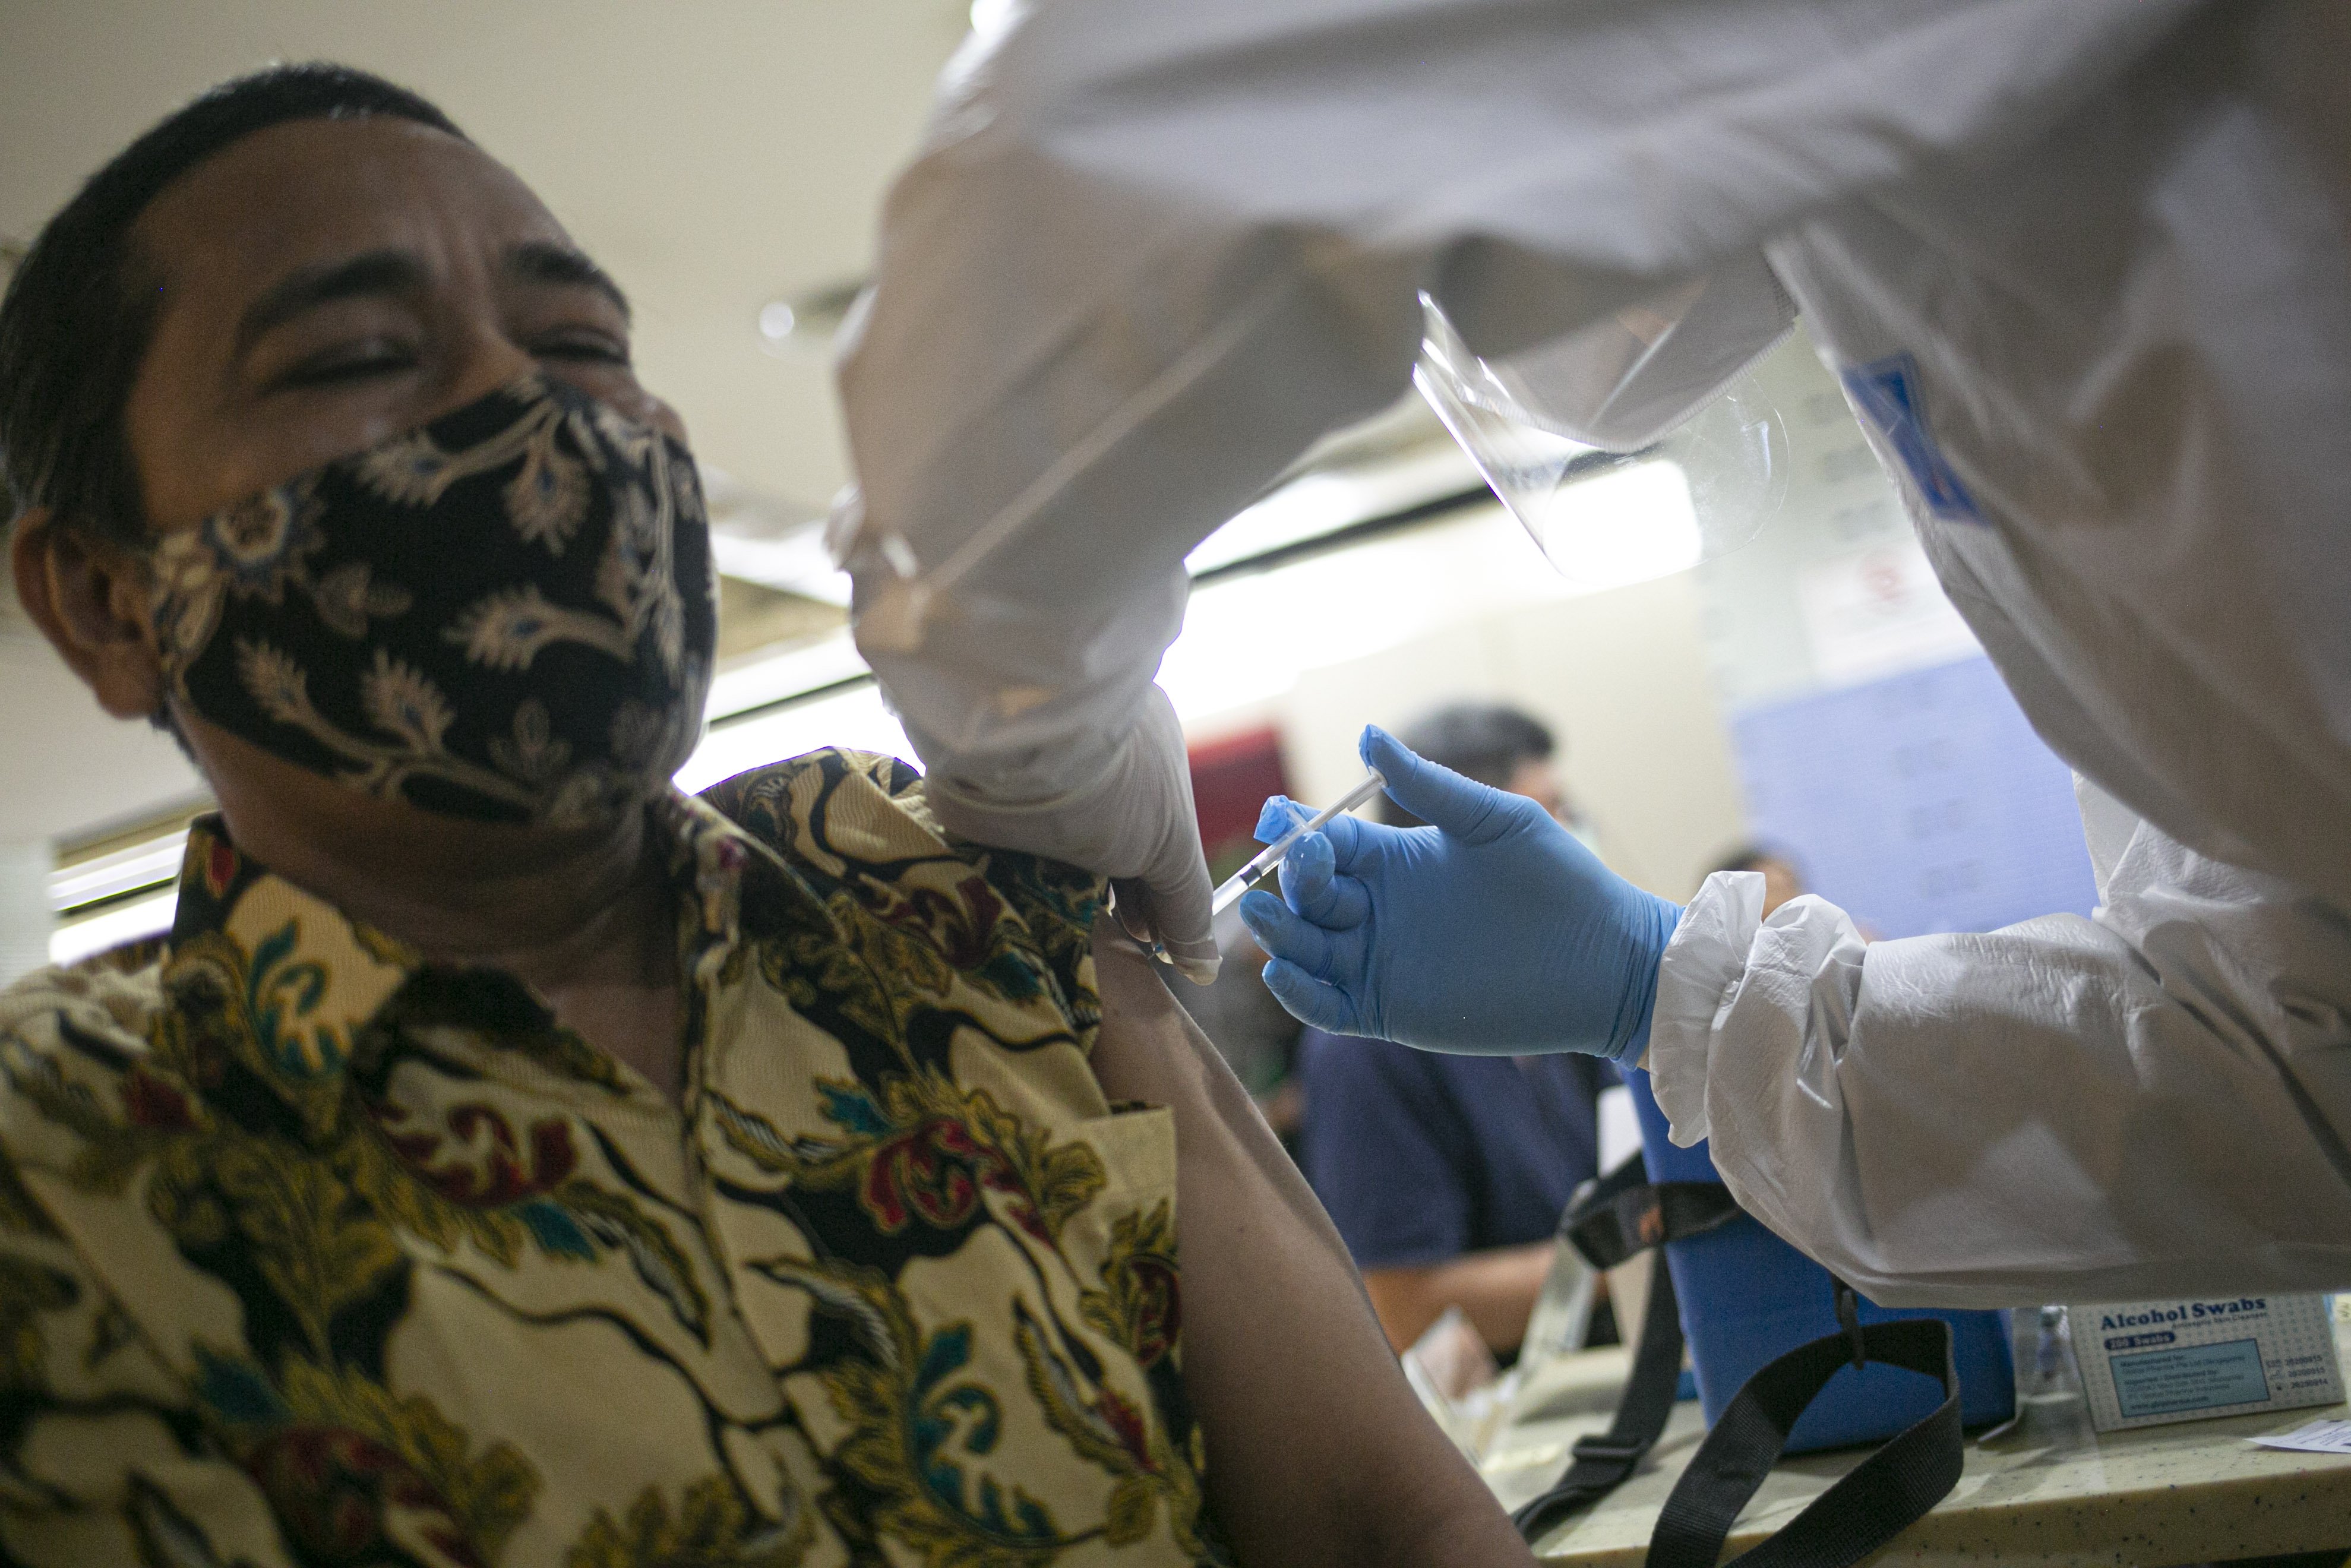 Petugas medis menyuntikan vaksin covid-19 kepada pedagang di Pasar Tanah Abang Blok A, Jakarta, Rabu (17/2/2021). Vaksinasi covid-19 tahap kedua yang diberikan untuk pekerja publik dan lansia itu dimulai dari pedagang Pasar Tanah Abang.